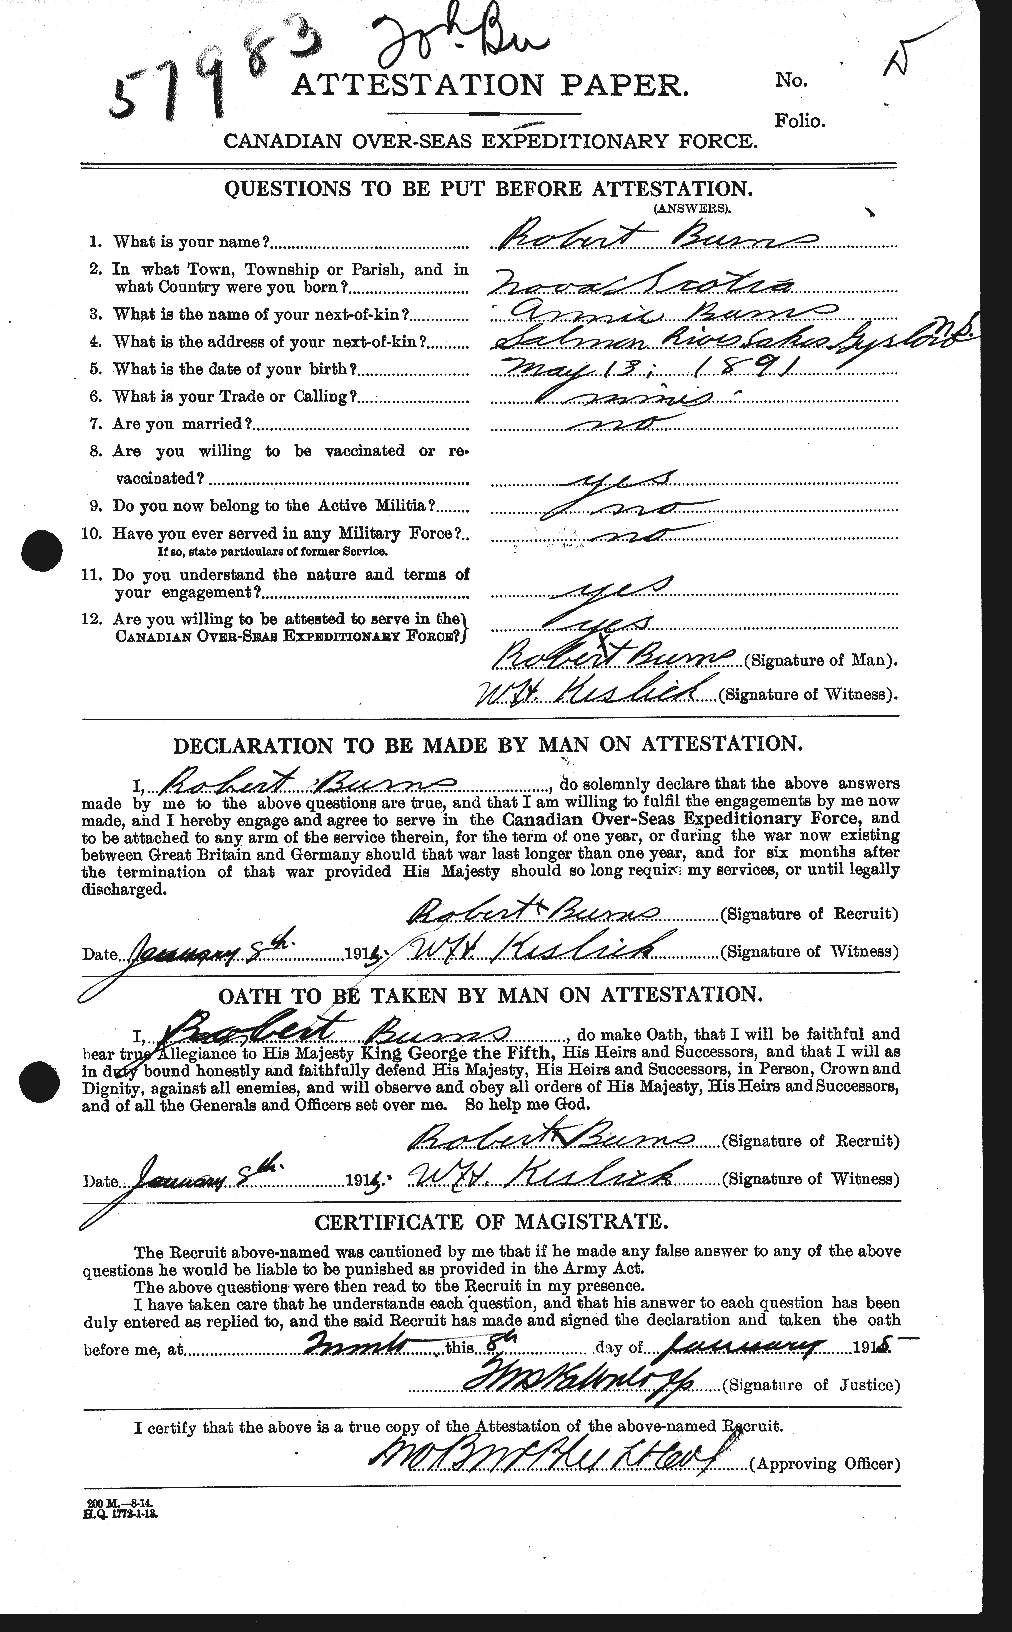 Dossiers du Personnel de la Première Guerre mondiale - CEC 271718a